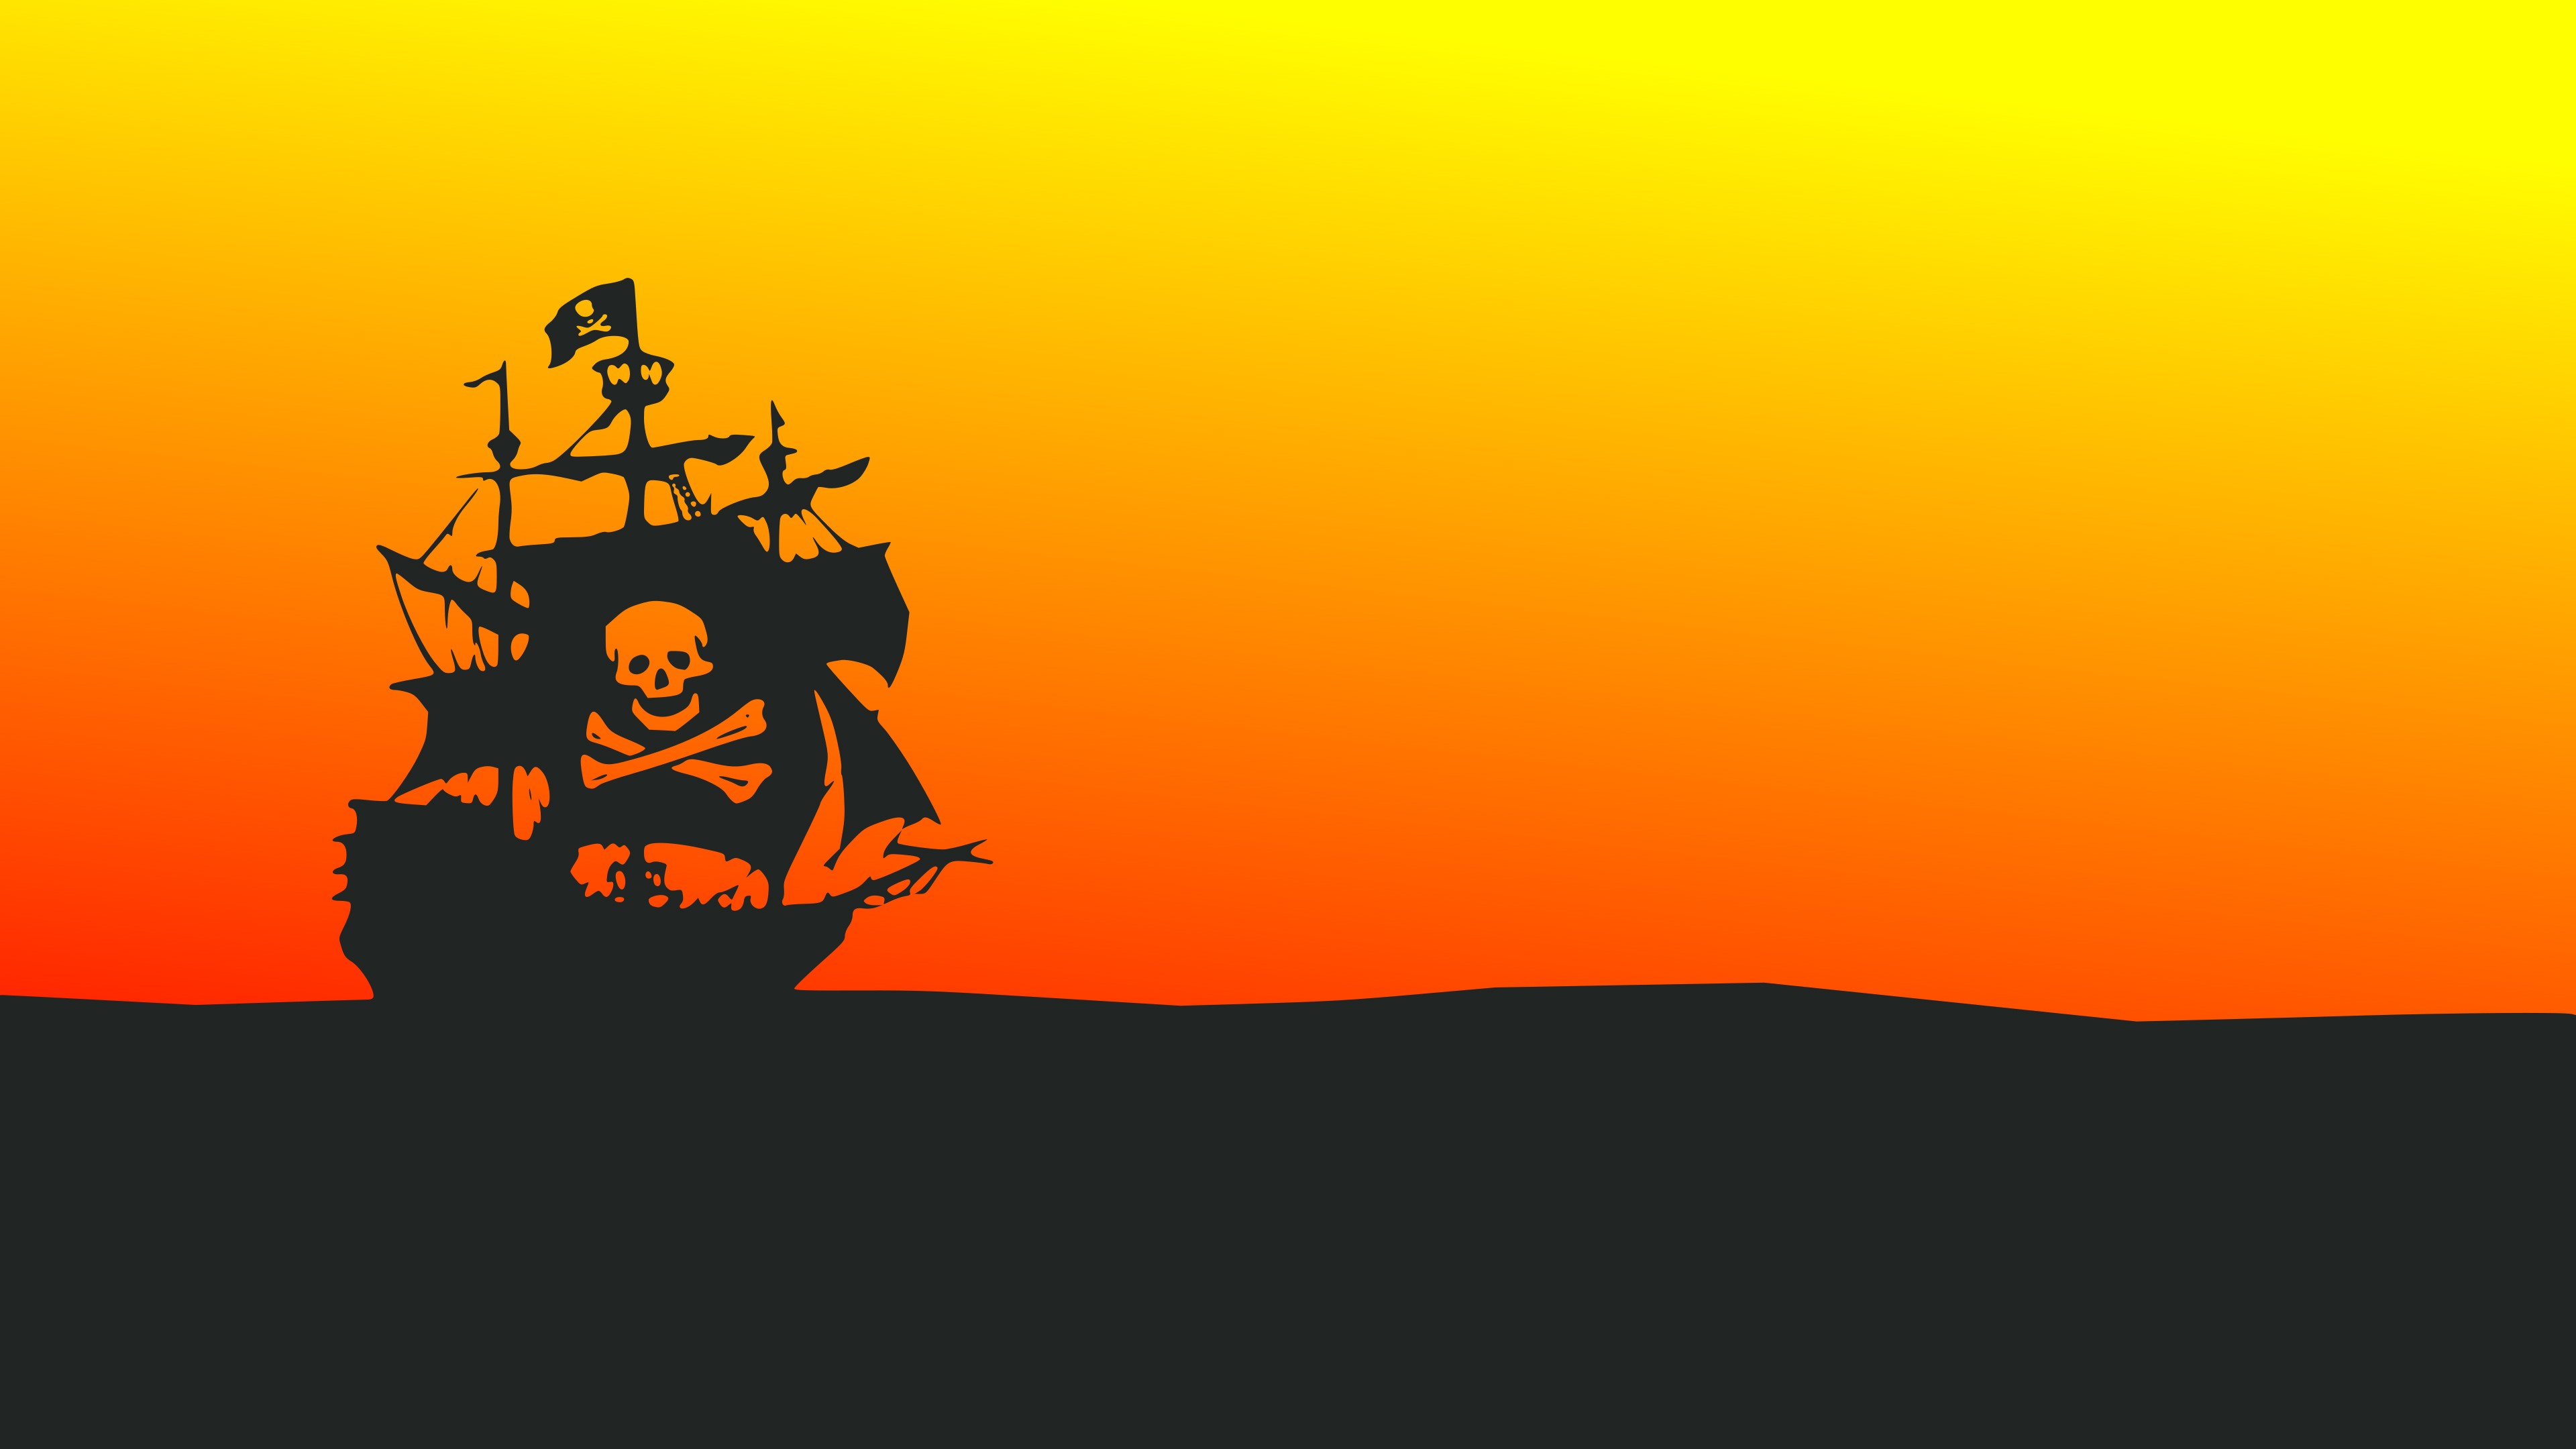 Wallpaper id pirate flag ship minimalism minimalist artist artwork digital art hd k free download